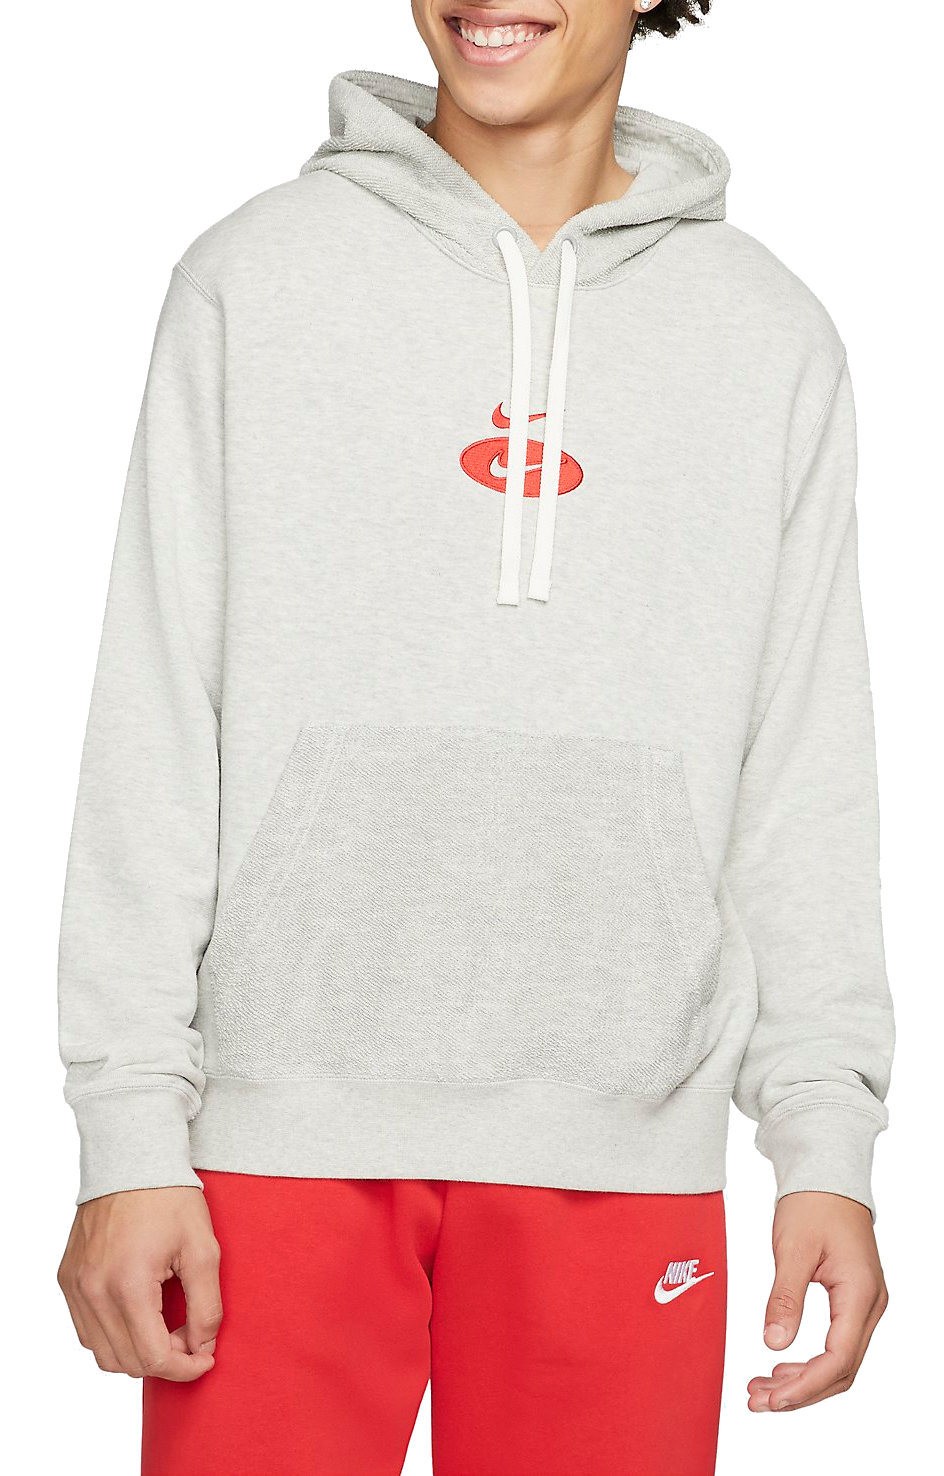 Hooded sweatshirt Nike Sportswear Swoosh League